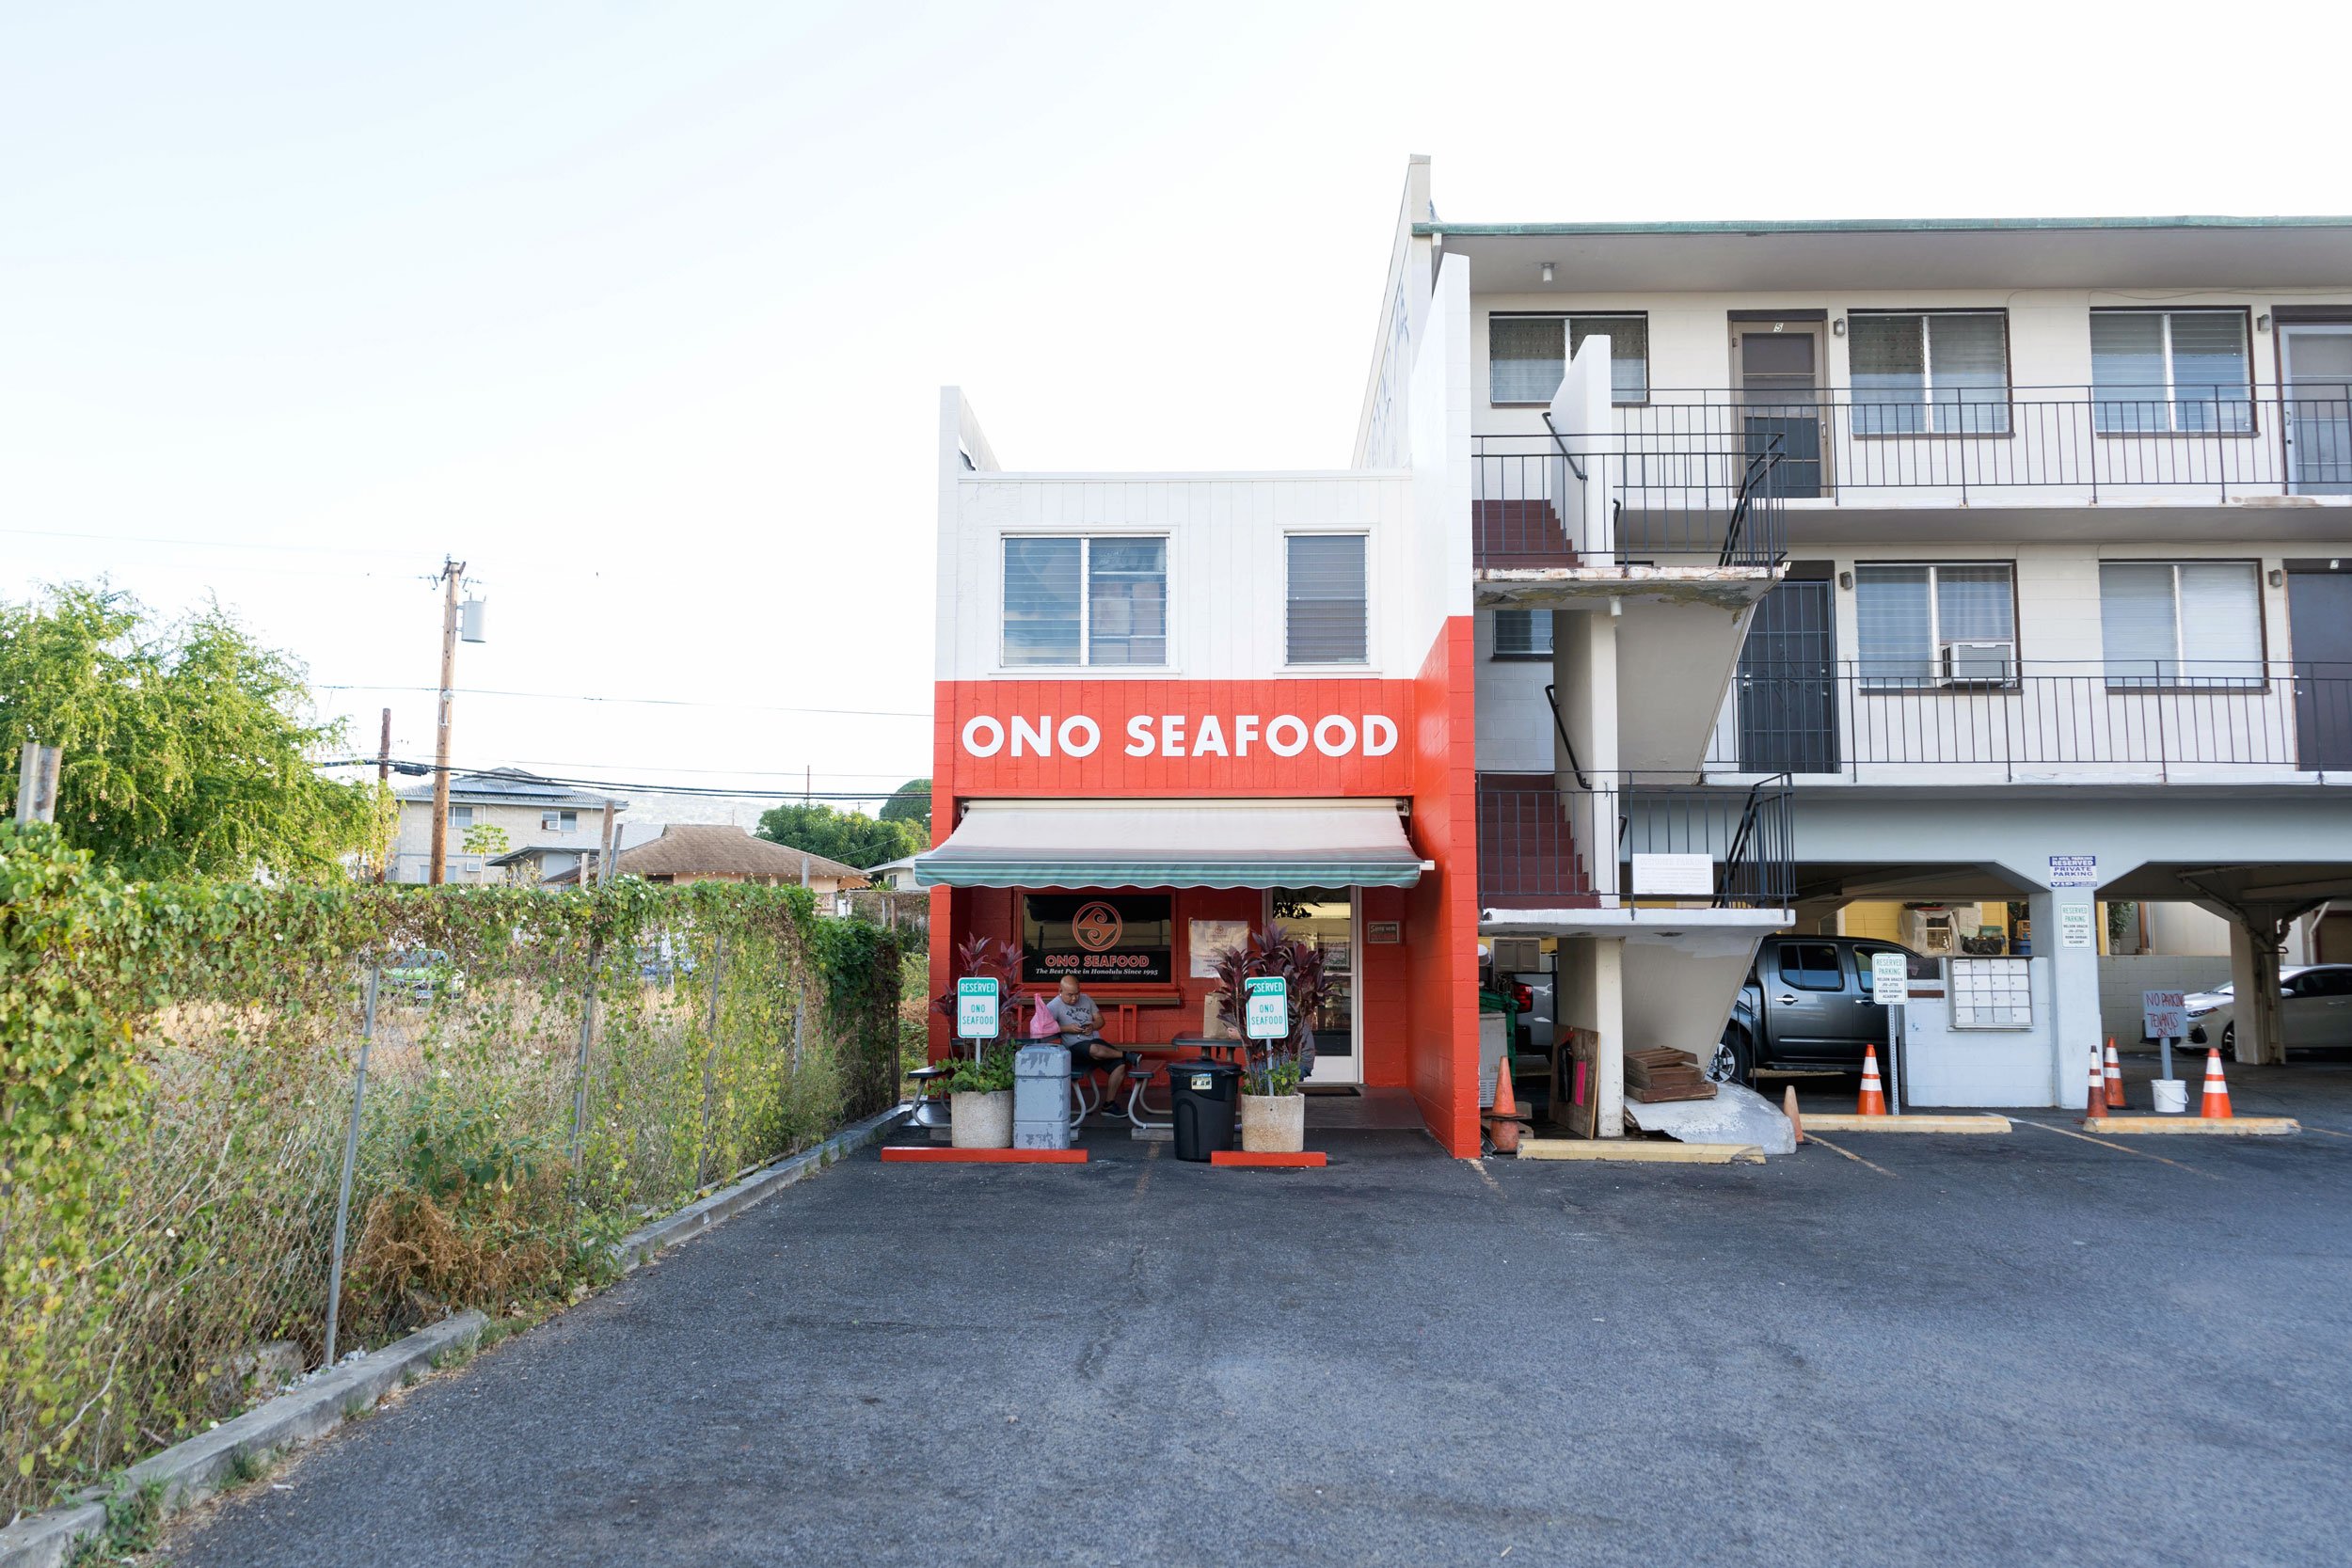 Ono Seafood shop